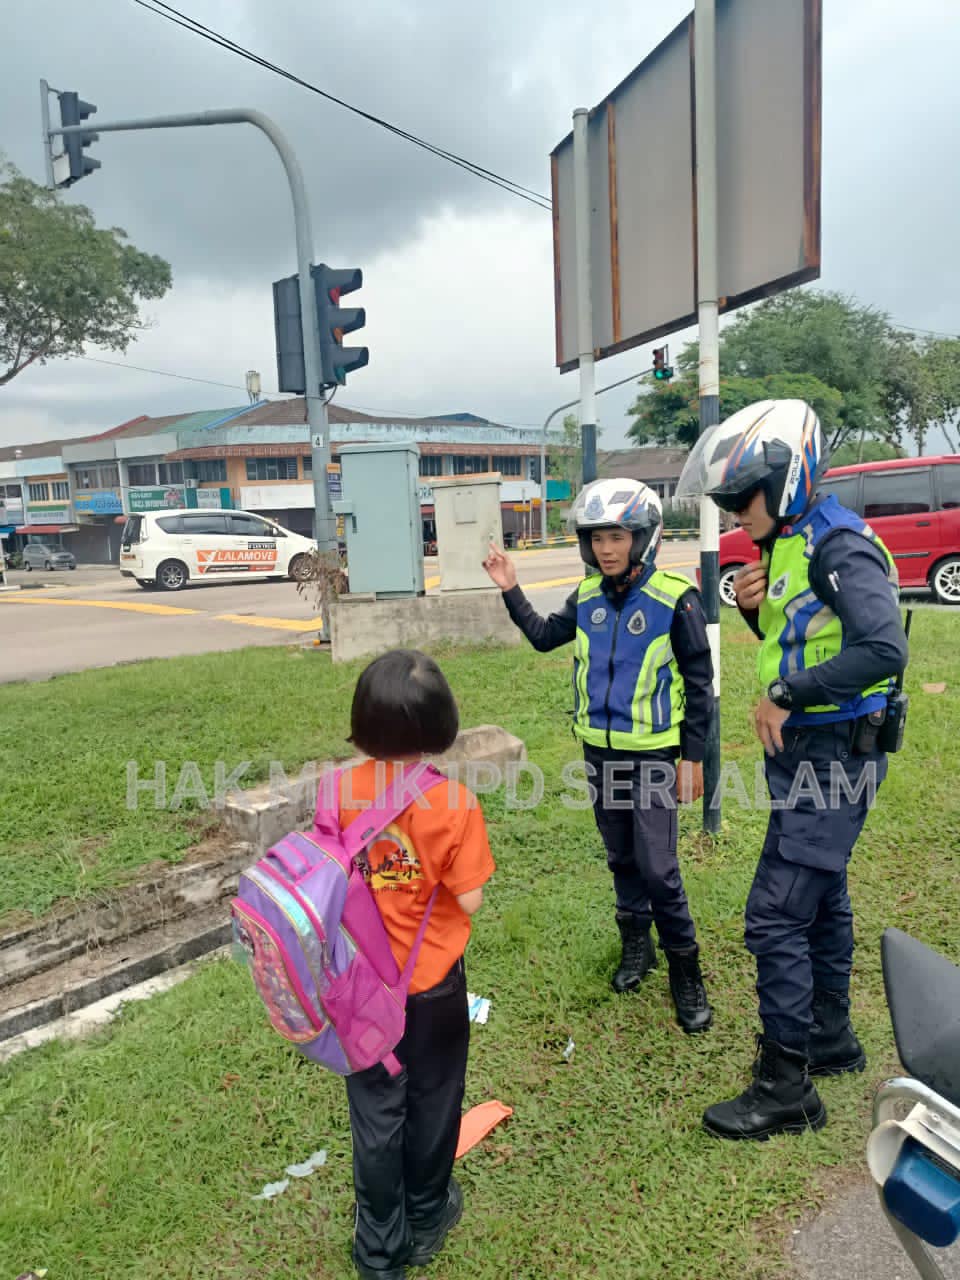 officers escort girl